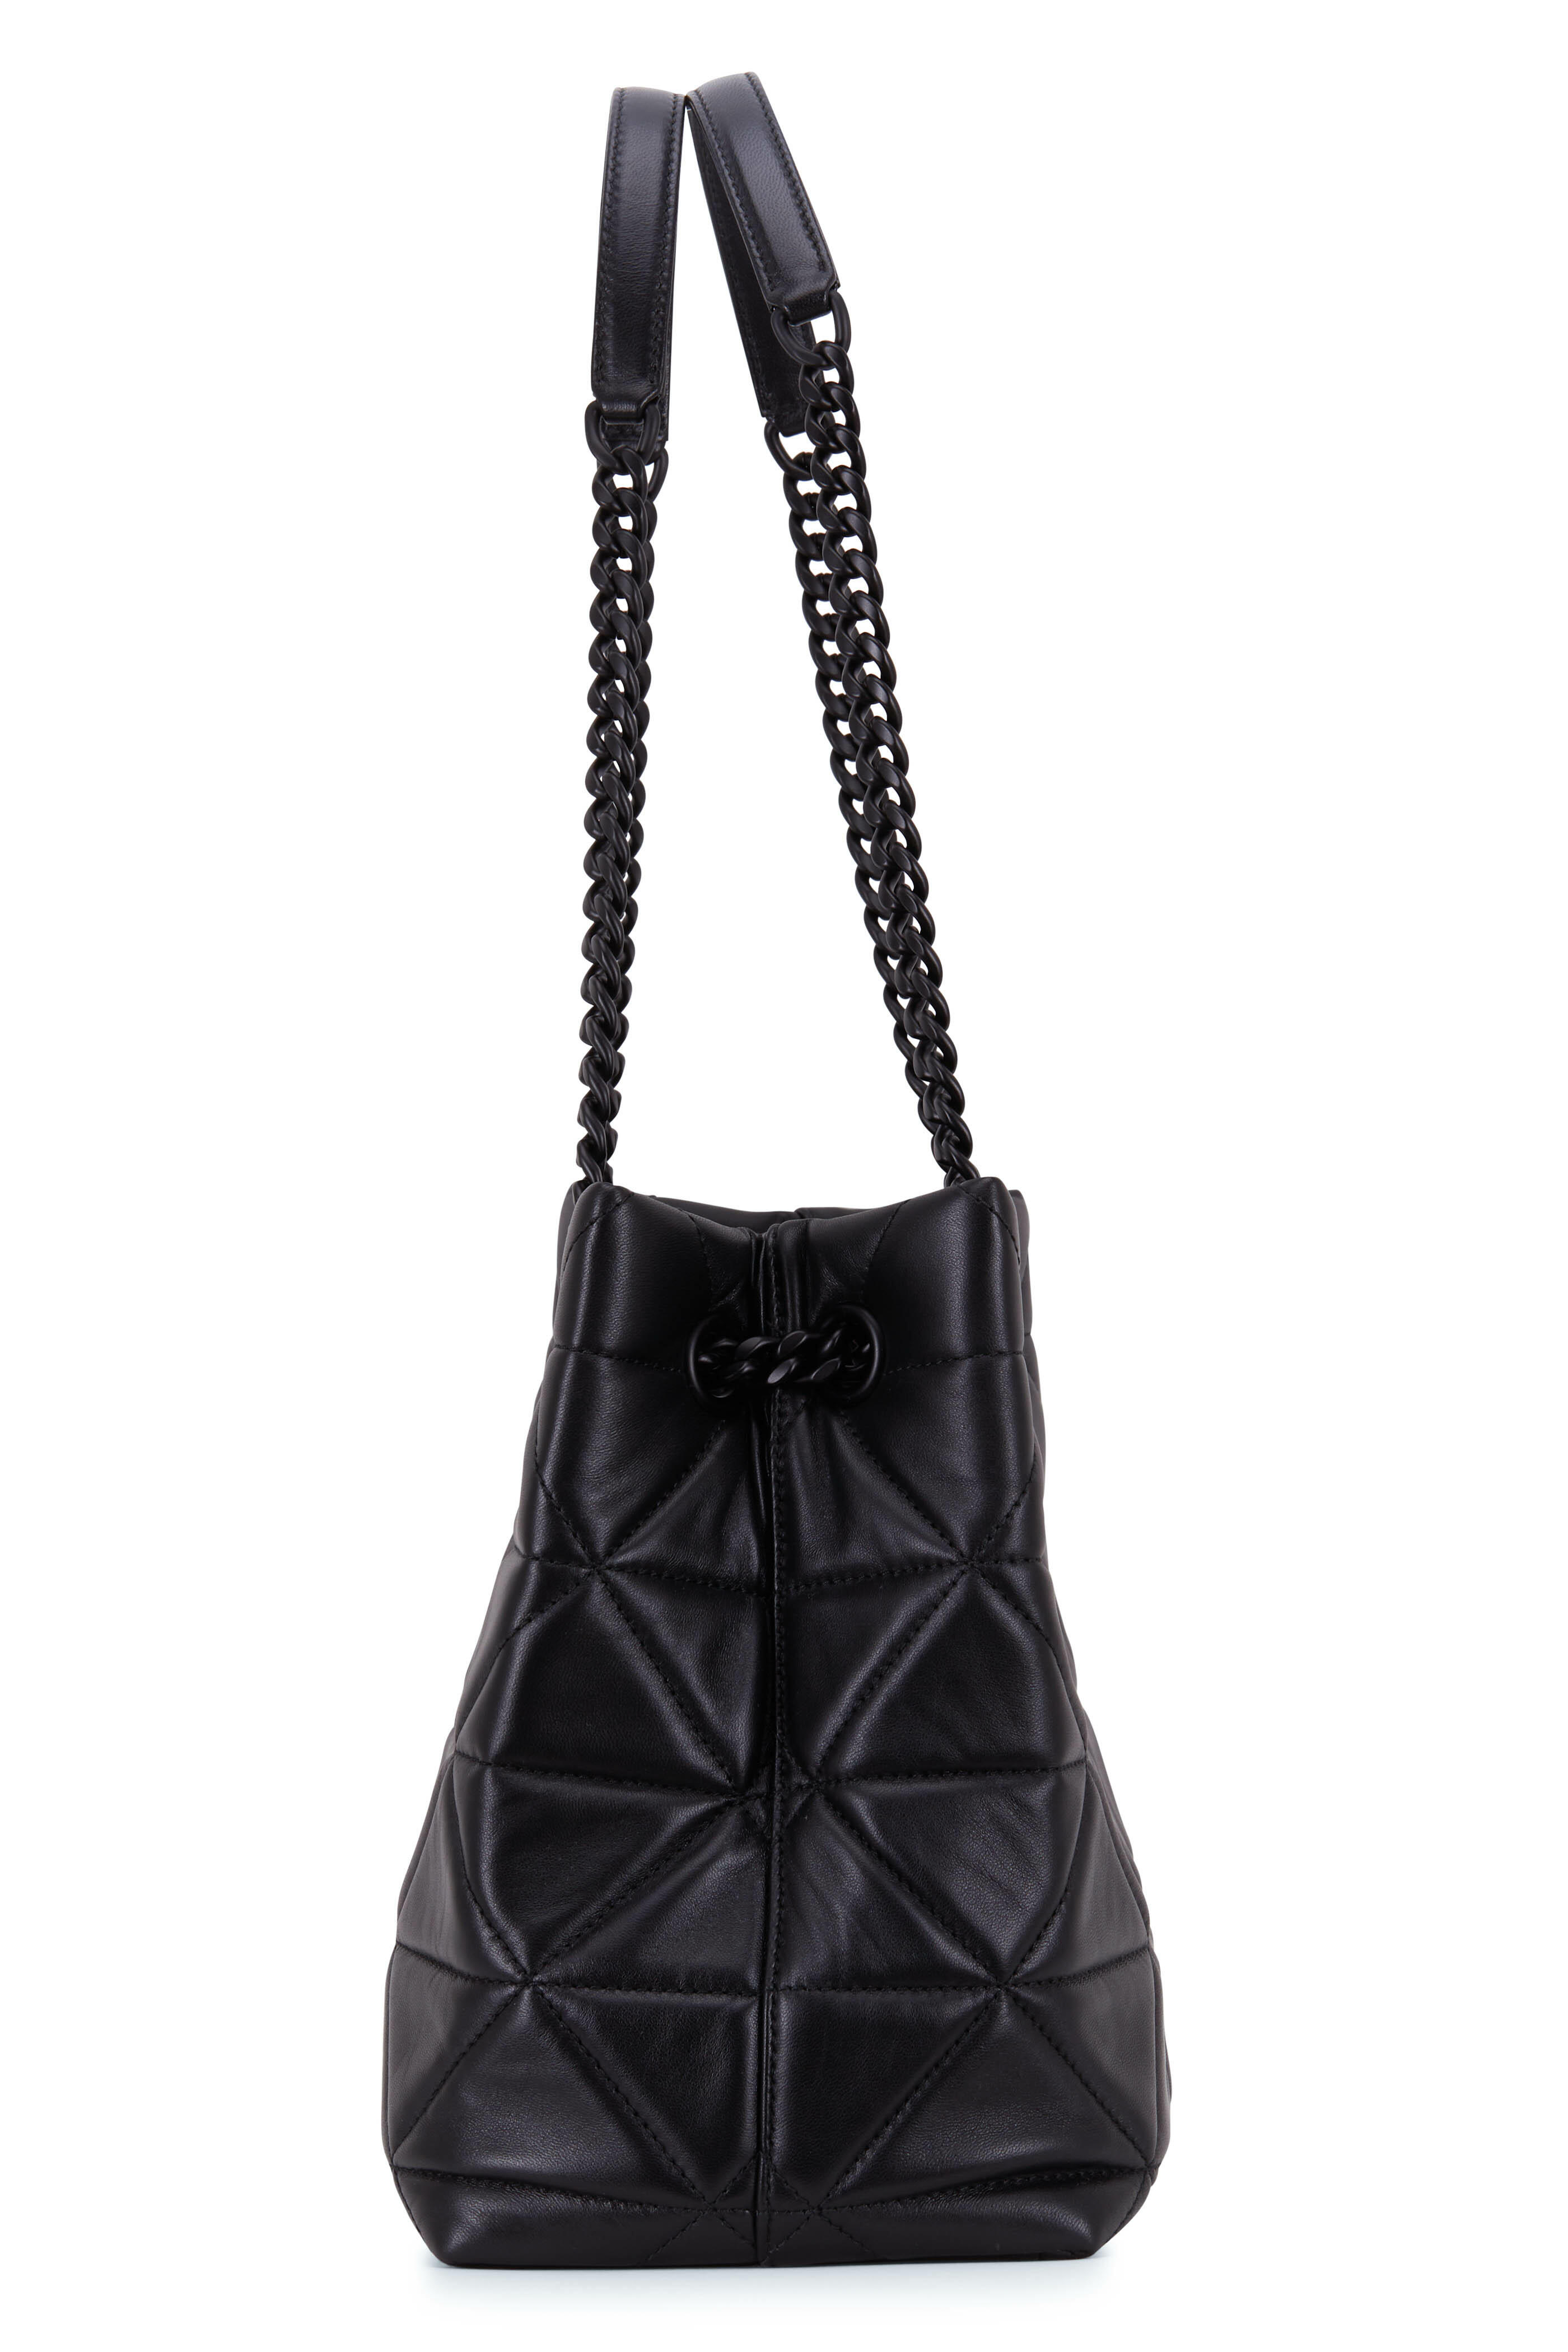 Prada Medium Spectrum Quilted Leather Shoulder Bag in Black